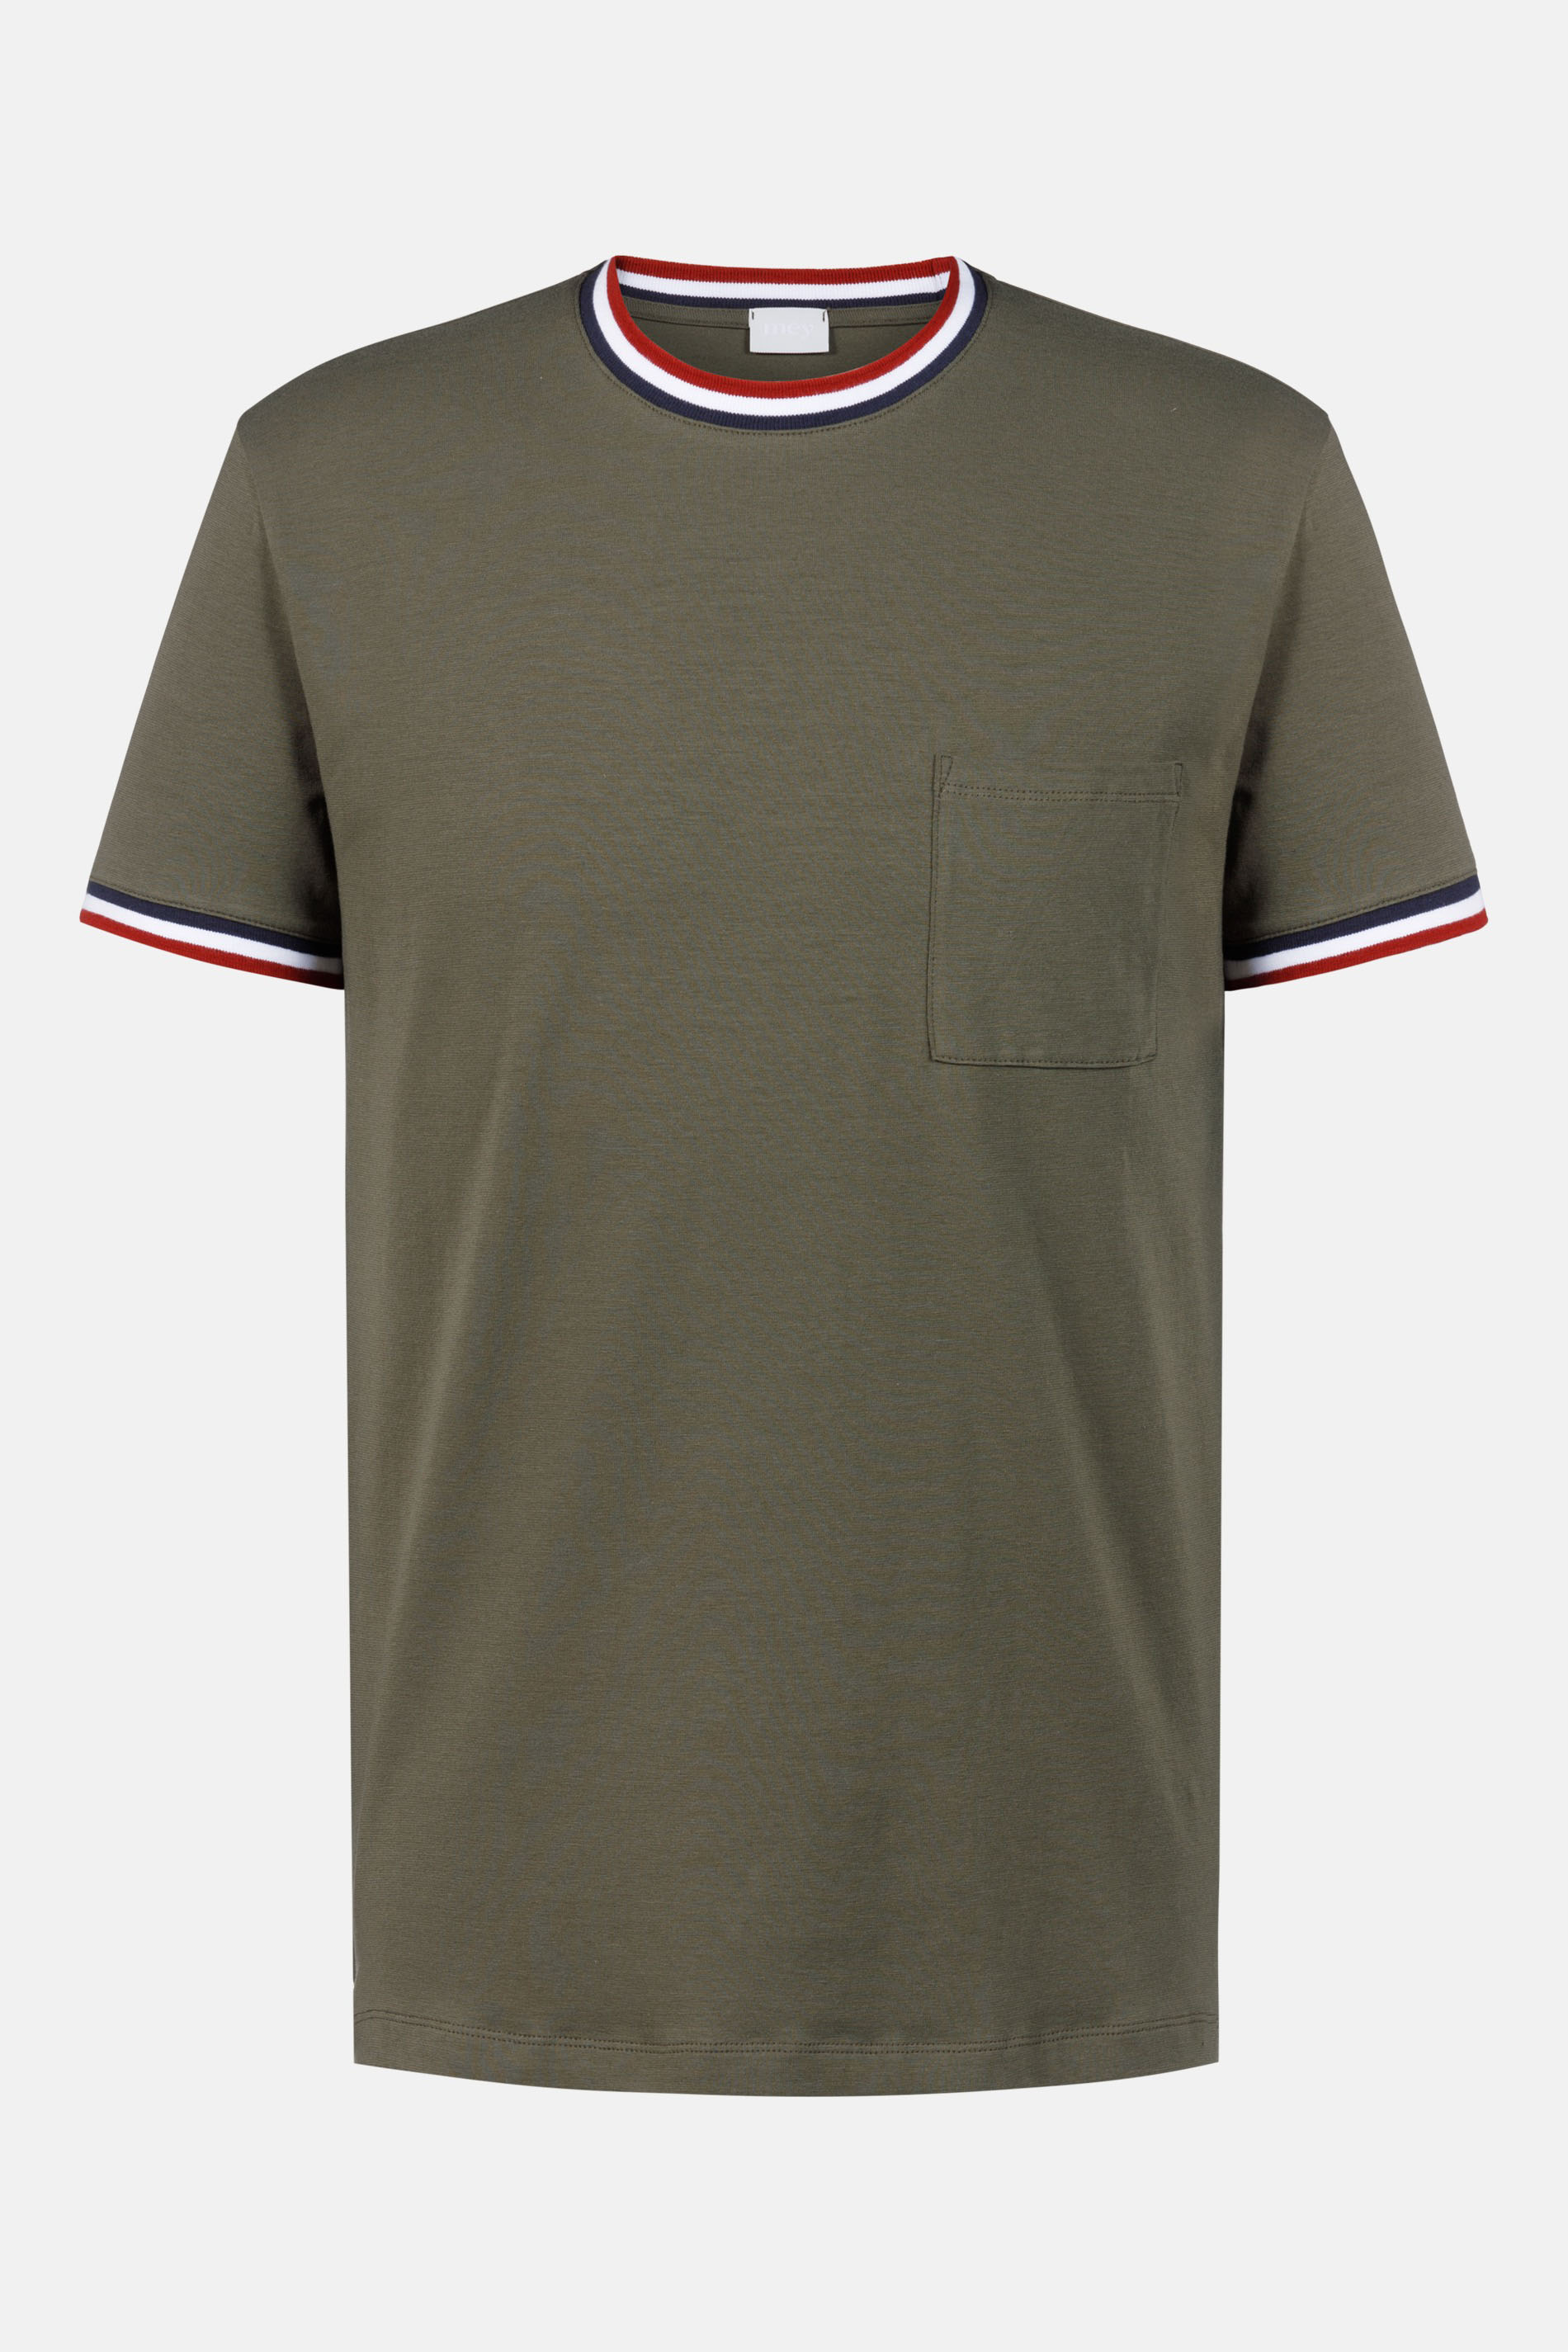 T-Shirt Serie Relax Stripes Freisteller | mey®